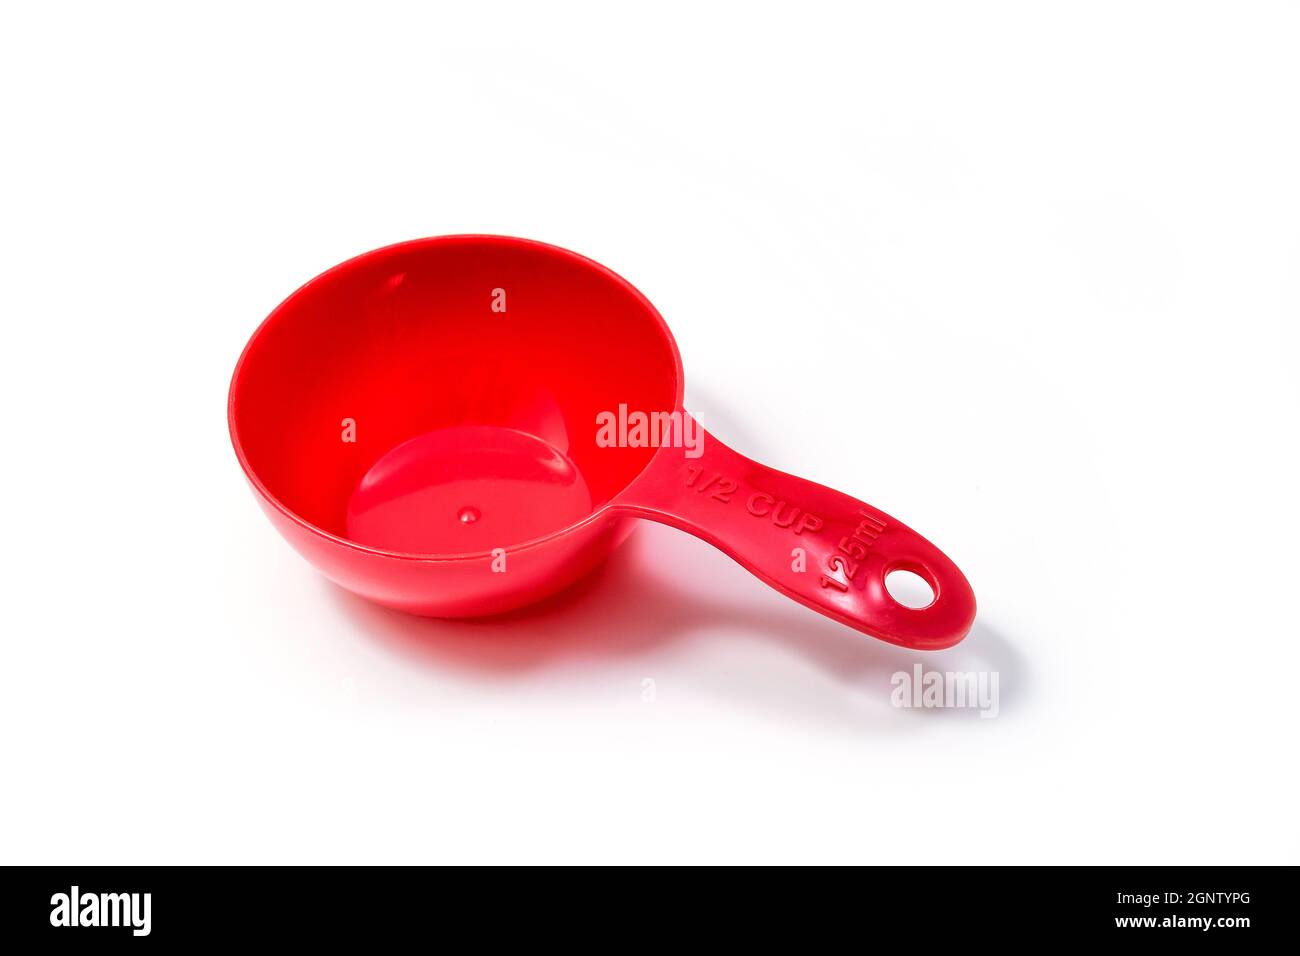 Misurino o cucchiaio per ingredienti rossi - misura metà. Isolato su sfondo bianco con tracciato di ritaglio Foto Stock